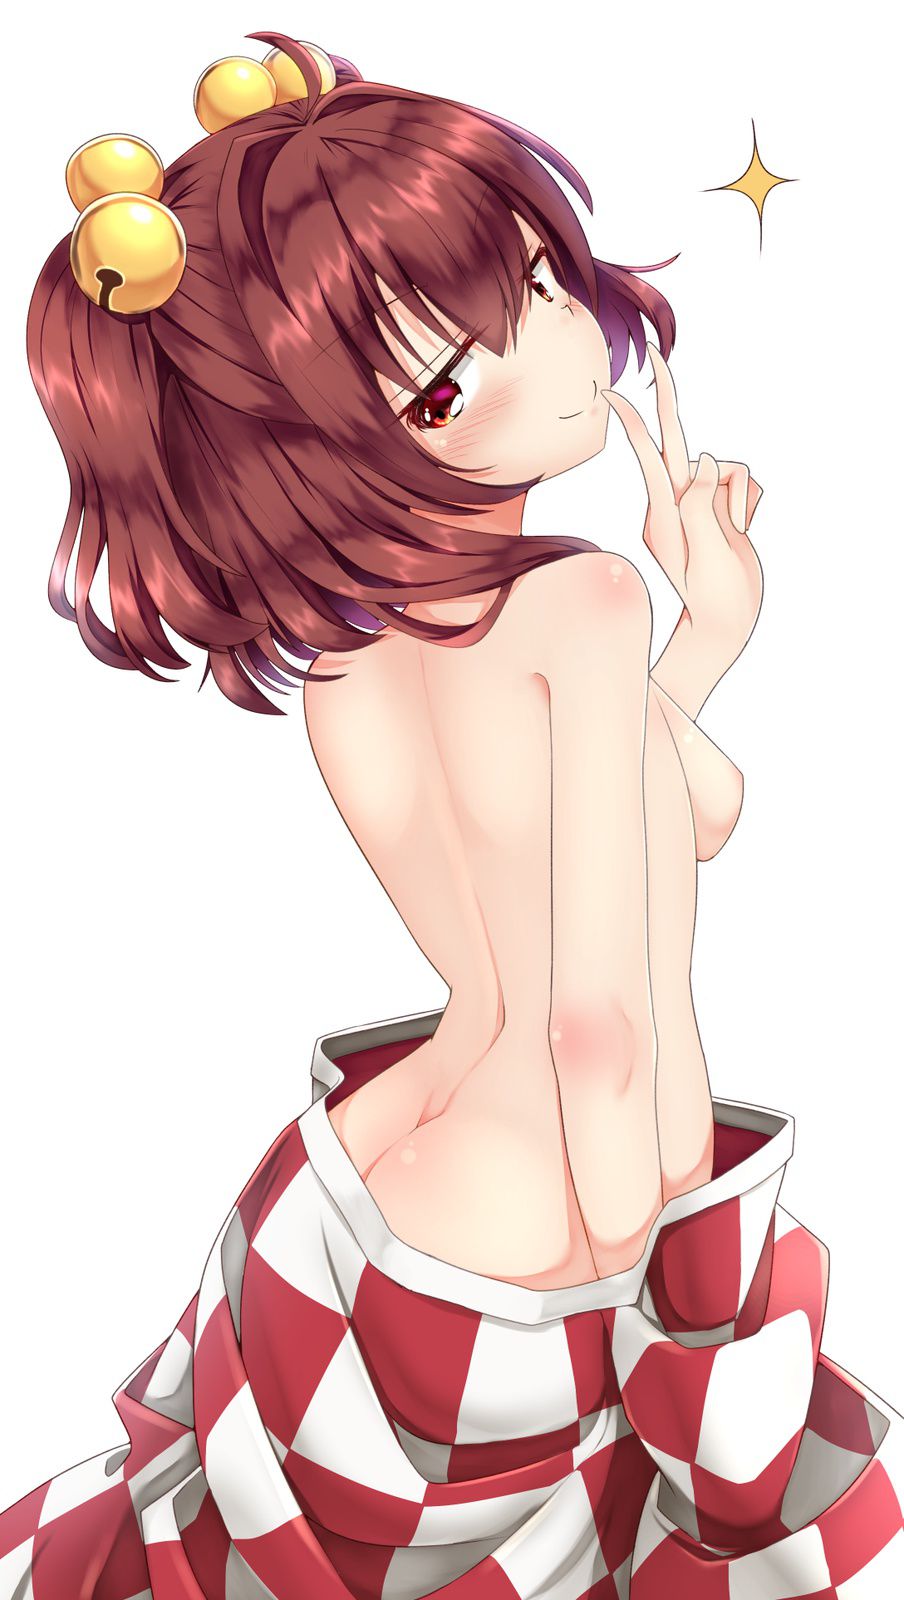 [Touhou Project] erotic image of Kozu Nakai! Part 2 8